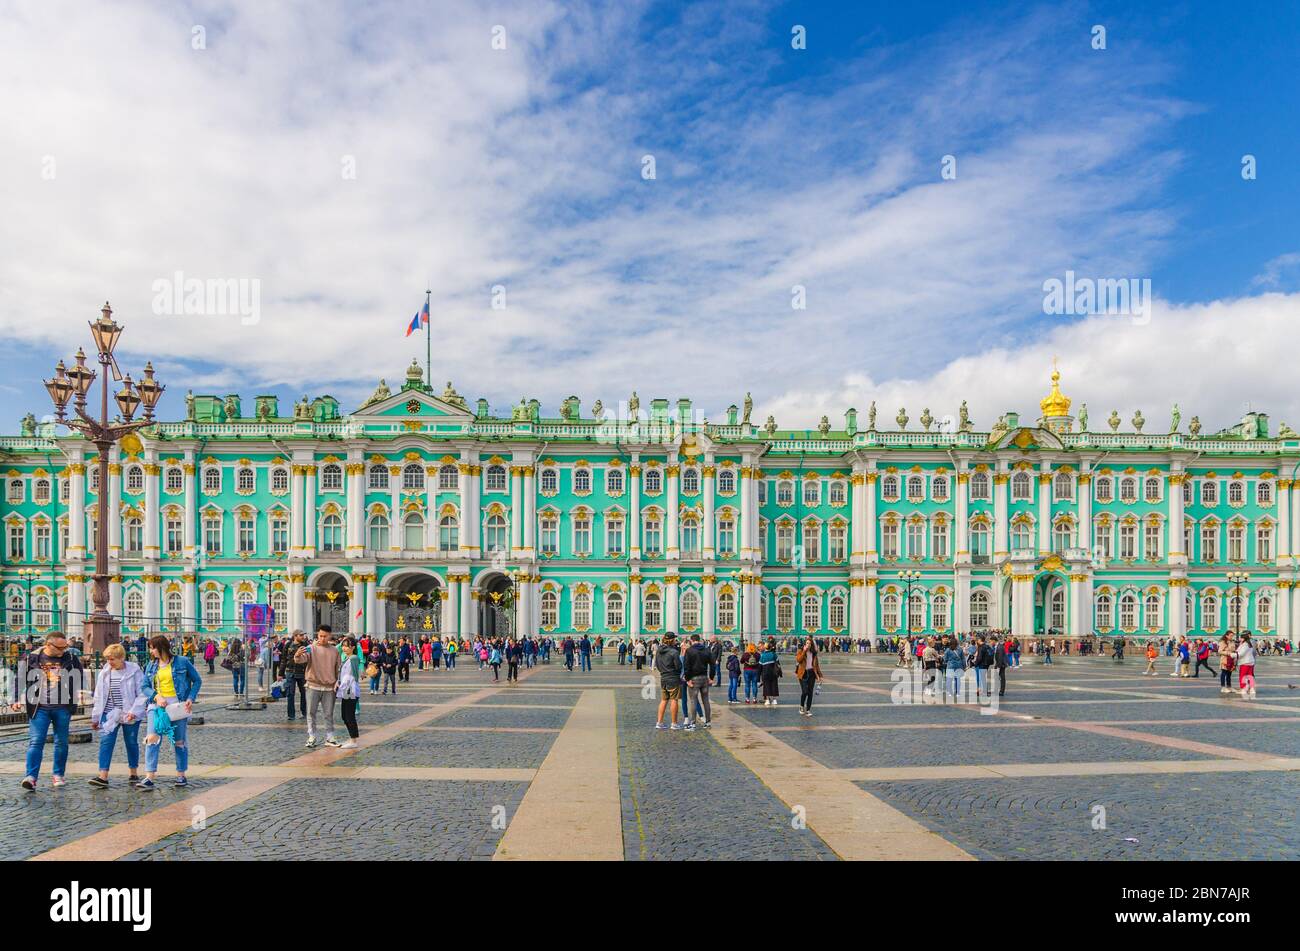 Sankt Petersburg, Russland, 3. August 2019: Das Gebäude des Staatlichen Eremitage-Museums, der Winterpalast offizielle Residenz der russischen Kaiser und Menschen Touristen sind auf dem Palastplatz zu Fuß Stockfoto